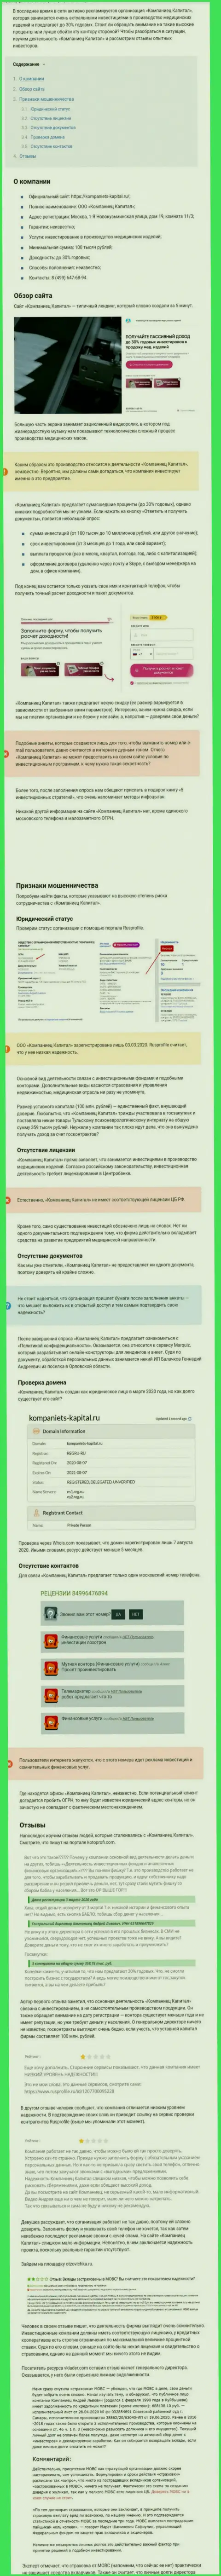 В сети не слишком положительно говорят о Kompaniets-Capital Ru (обзор мошеннических уловок организации)